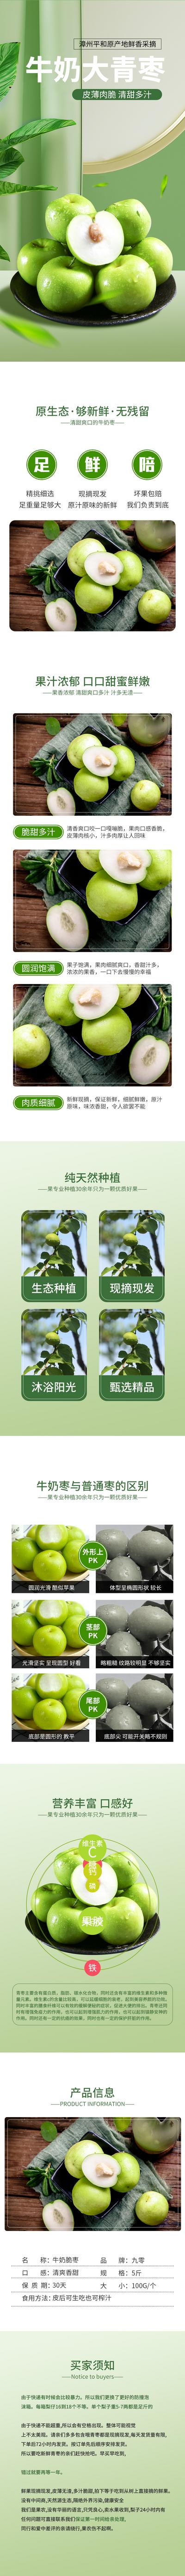 【南门网】广告 海报 电商 青枣 水果 详情页 农产品